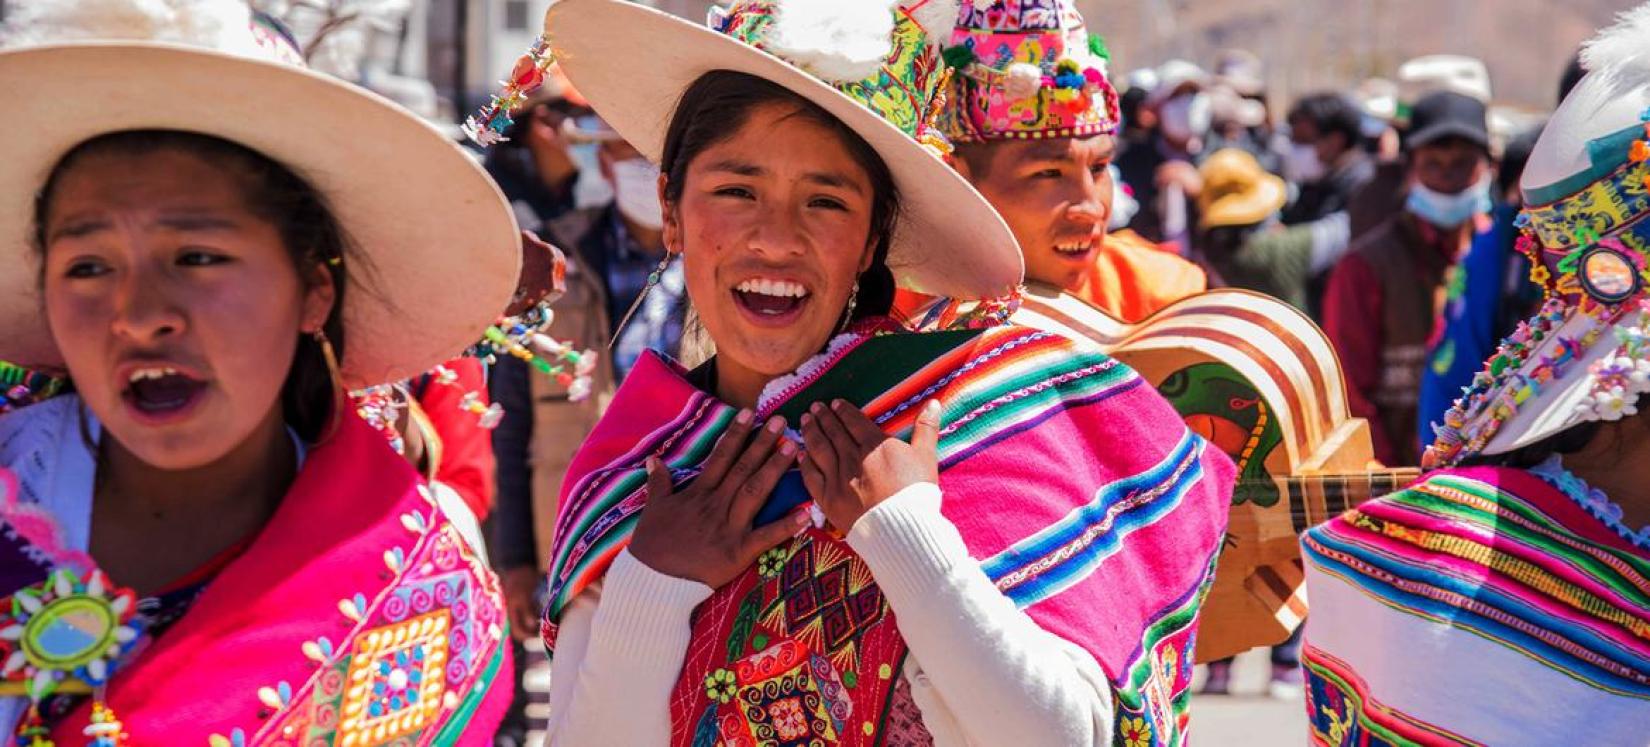 Jovens indígenas dançando na zona rural da Bolívia.